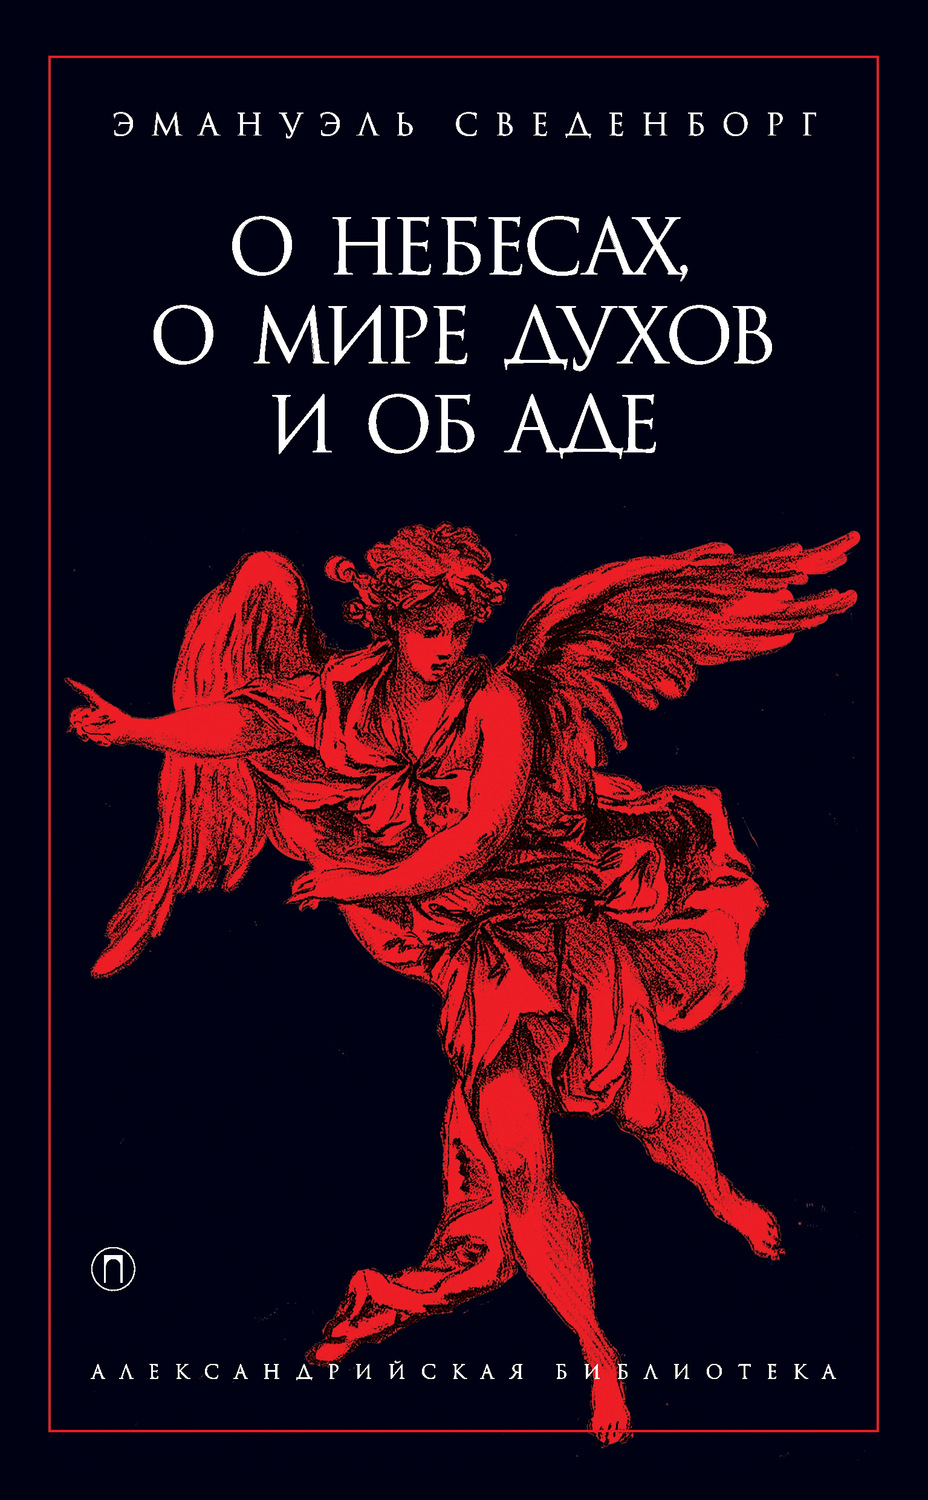 Книга про духов. Сведенборг э. "о небесах". Книга о небесах о мире духов и об аде.